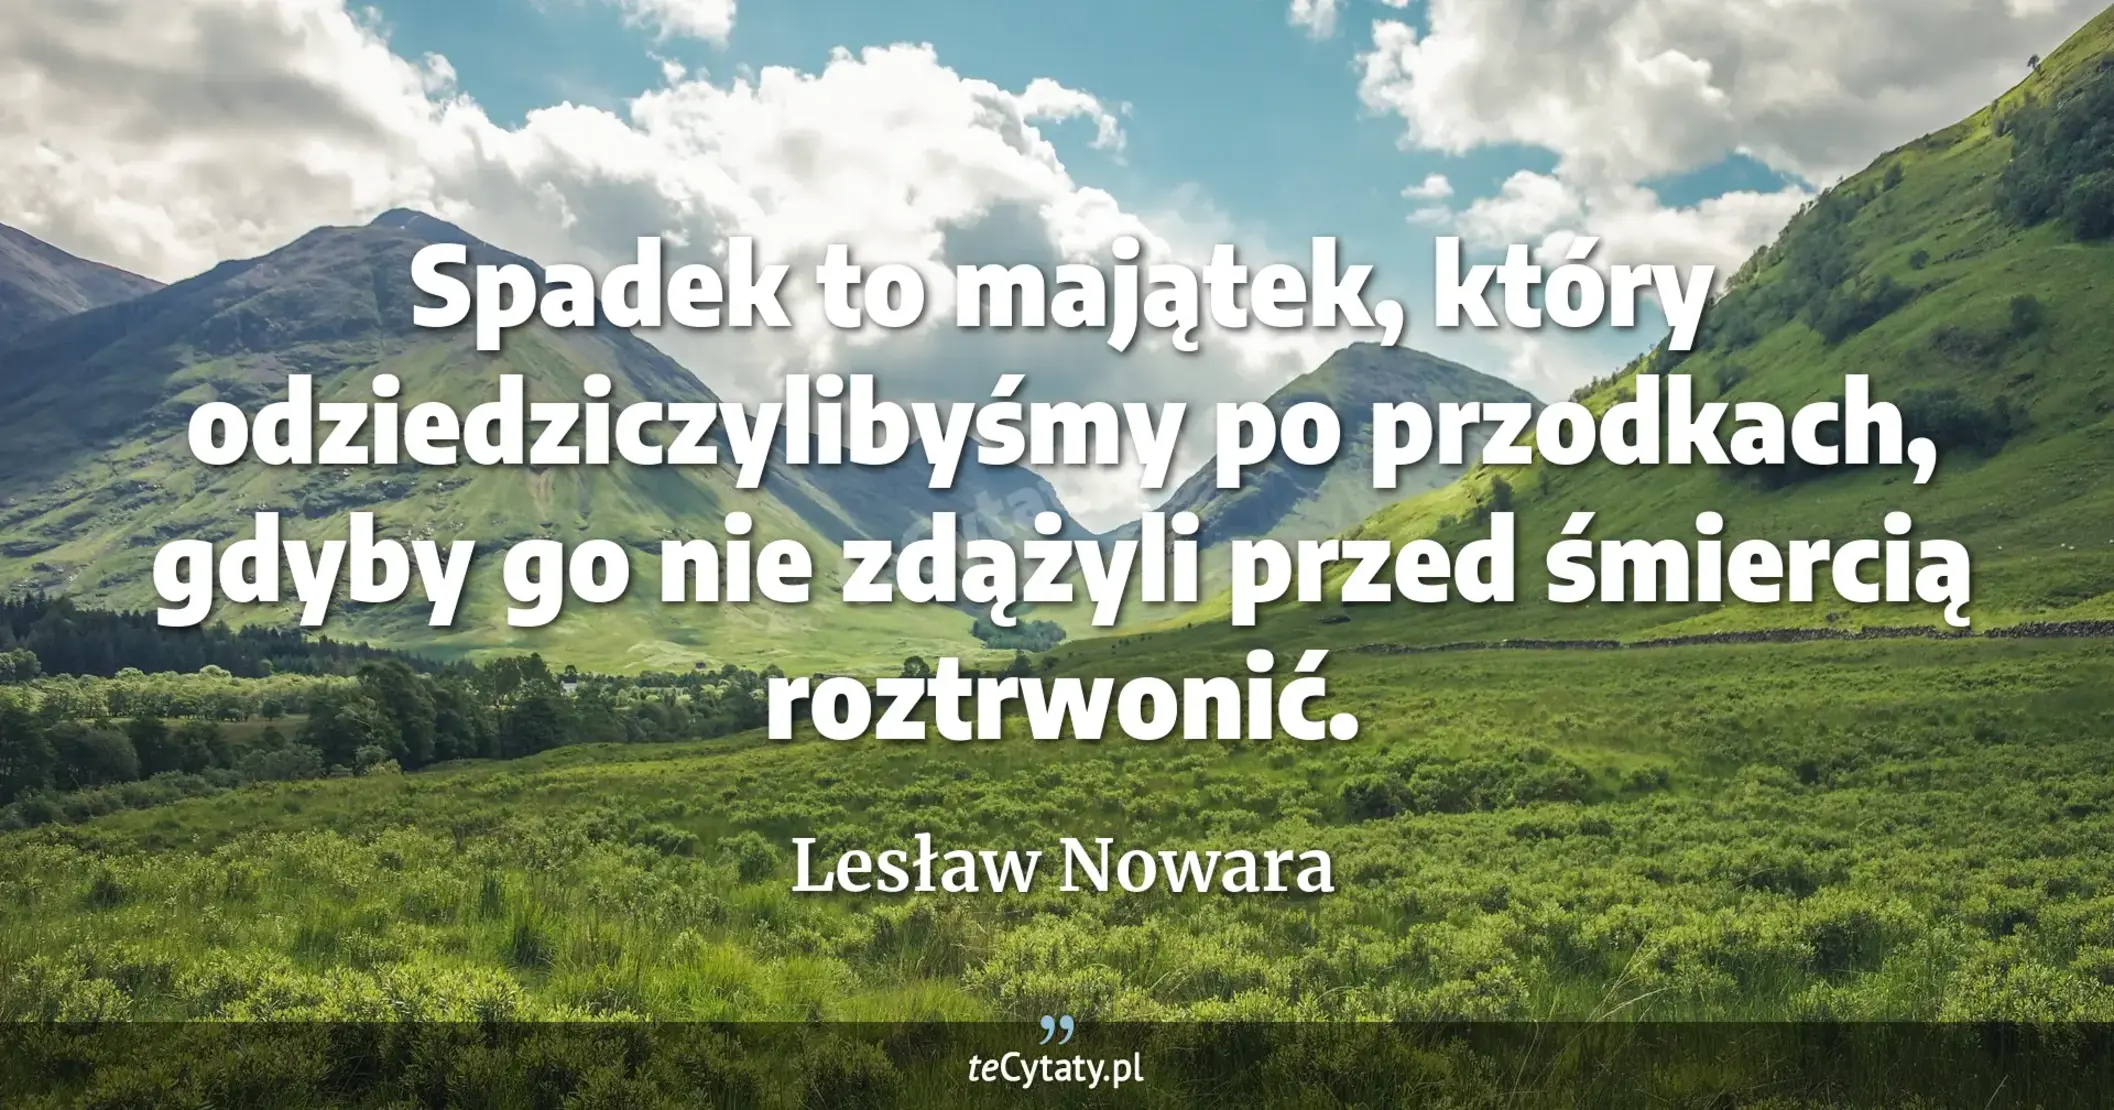 Spadek to majątek, który odziedziczylibyśmy po przodkach, gdyby go nie zdążyli przed śmiercią roztrwonić. - Lesław Nowara